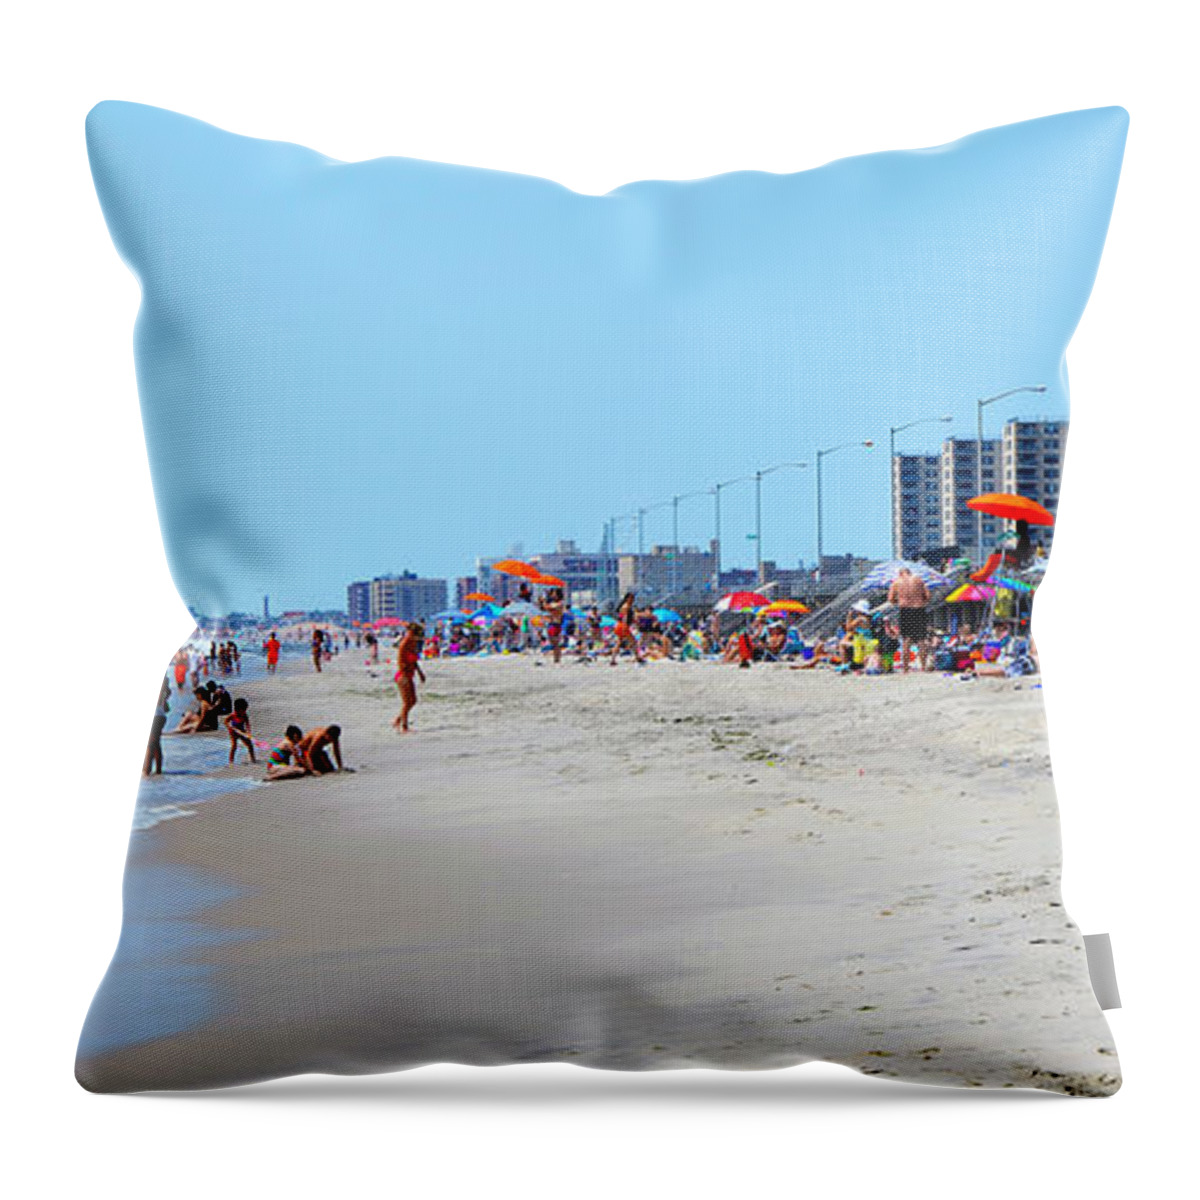 Rockaway Beach Throw Pillow featuring the photograph Rockaway Beach and Boardwalk Summer 2012 by Maureen E Ritter